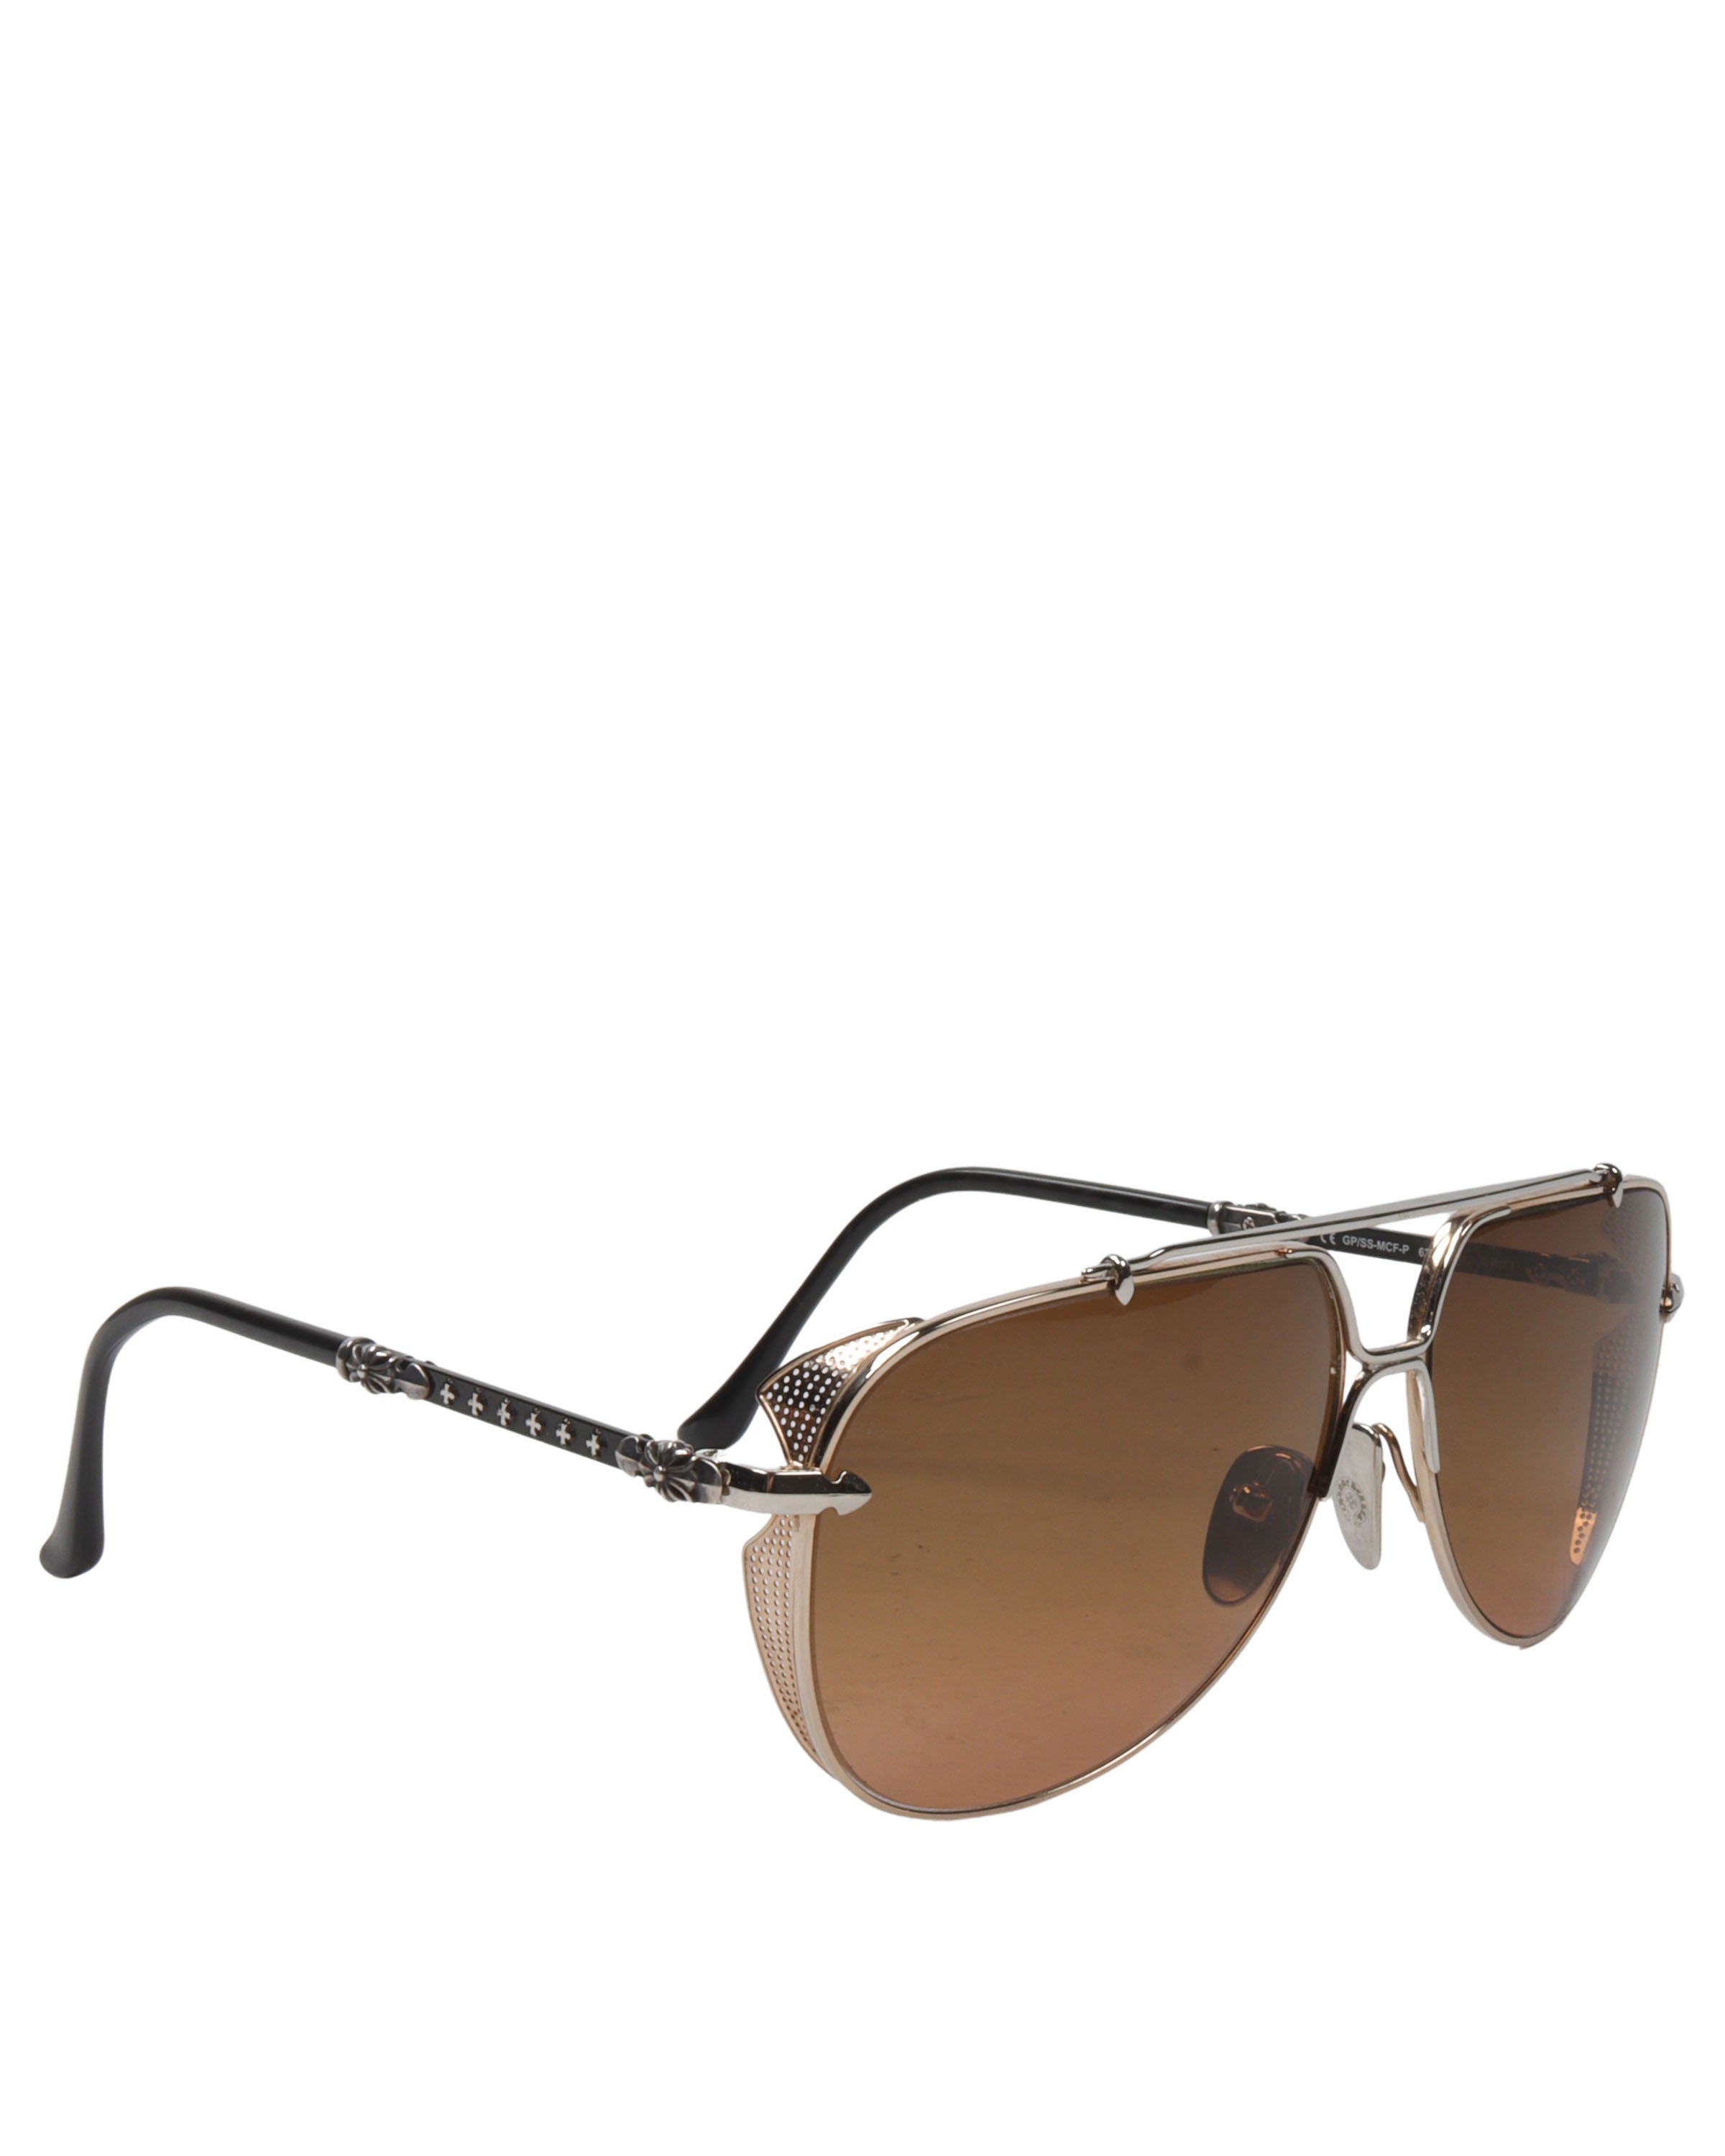 "GRITT" Oversized Sunglasses